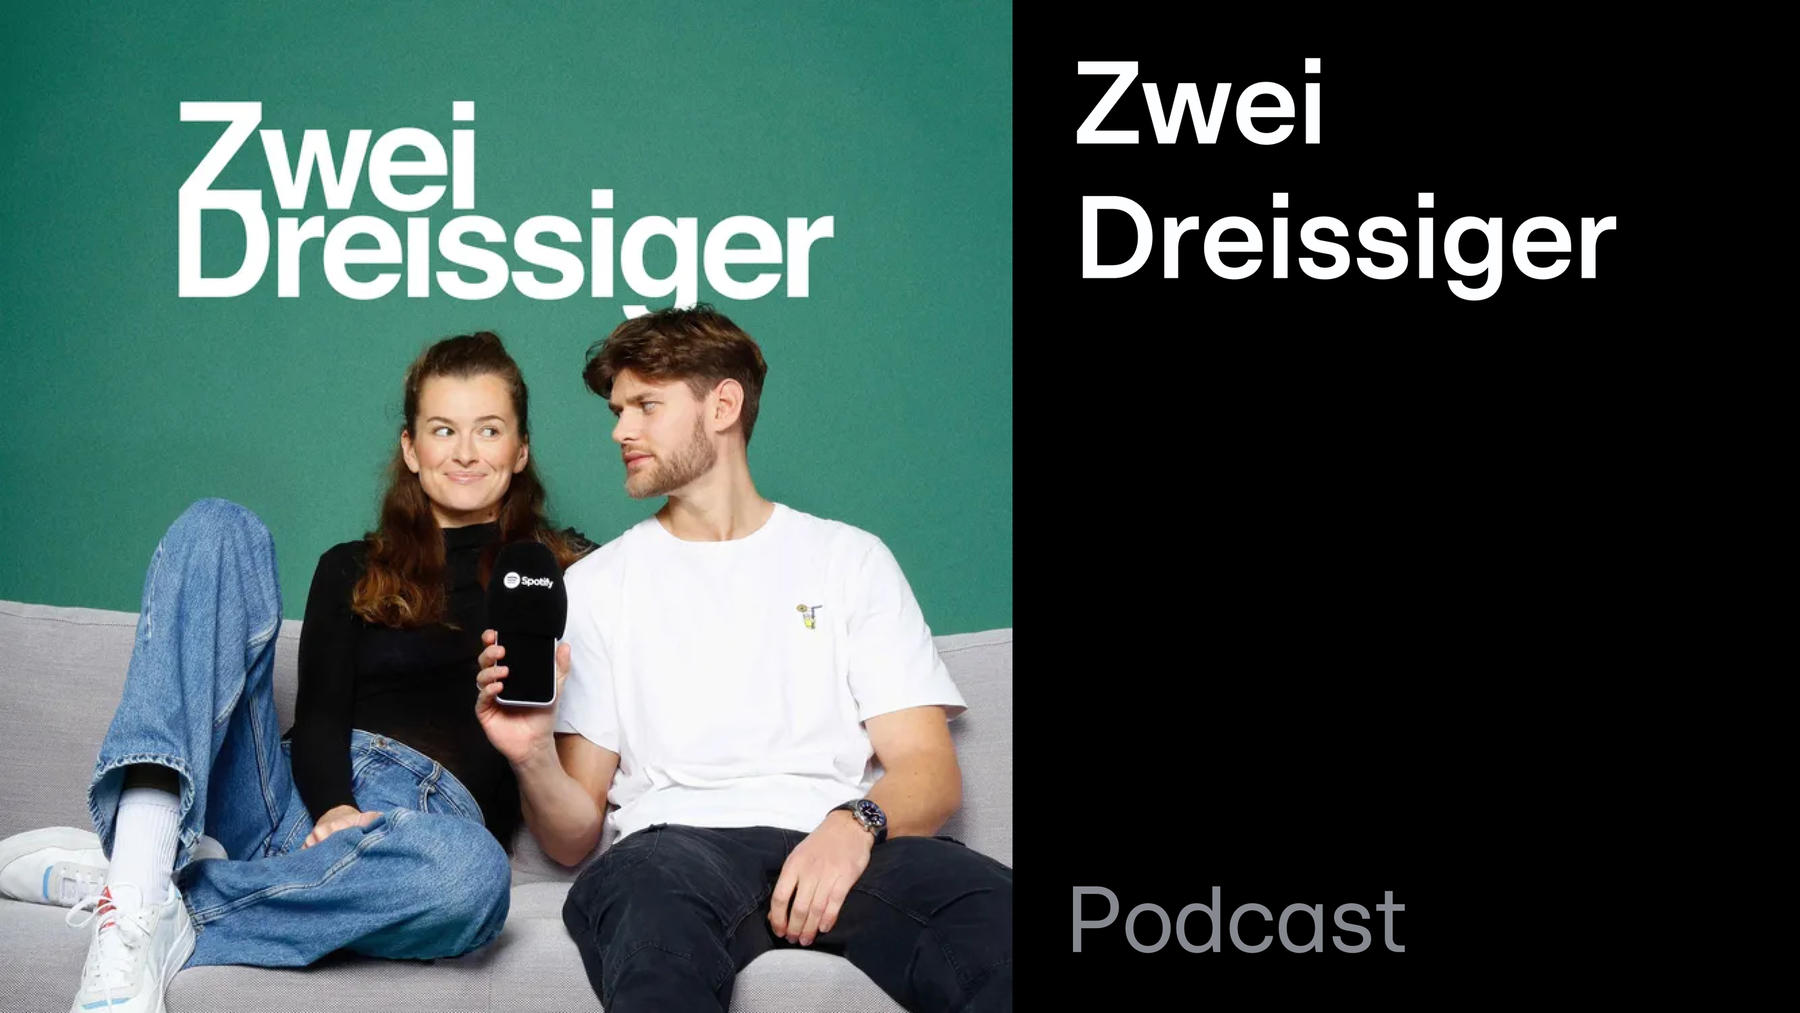 Podcast: Zwei Dreissiger